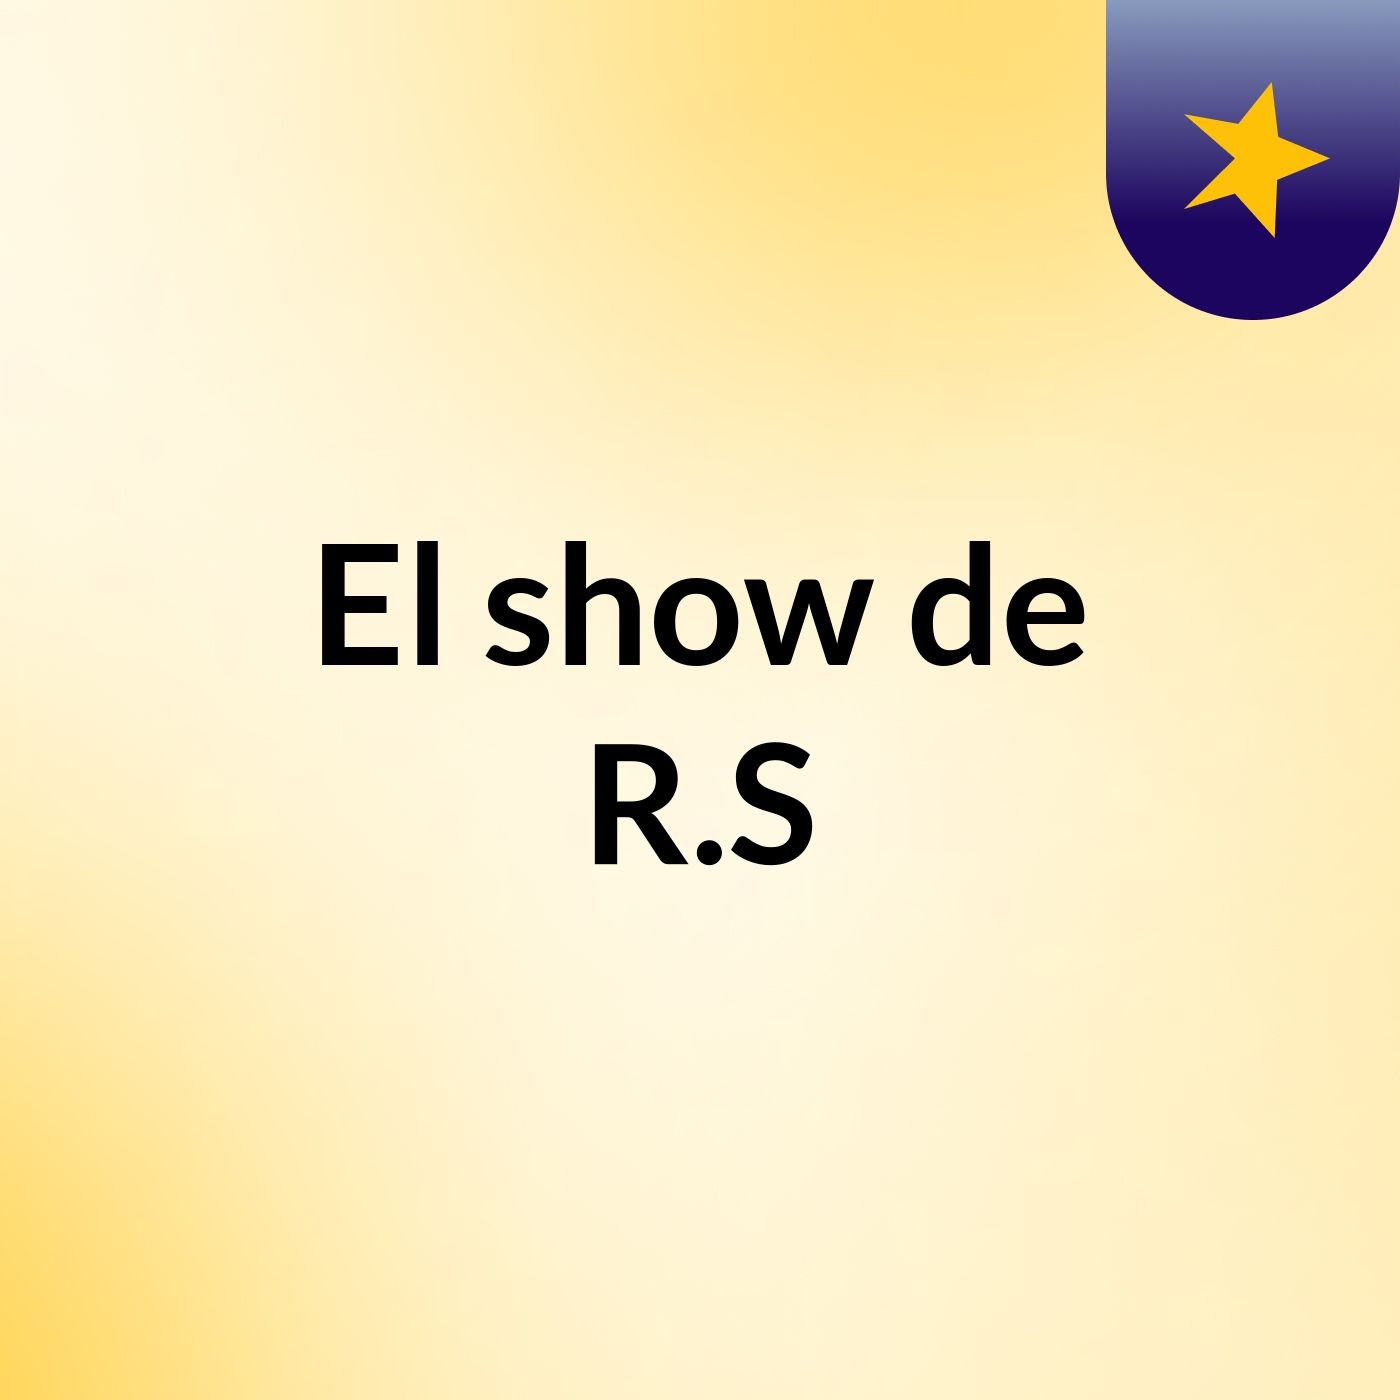 El show de R.S